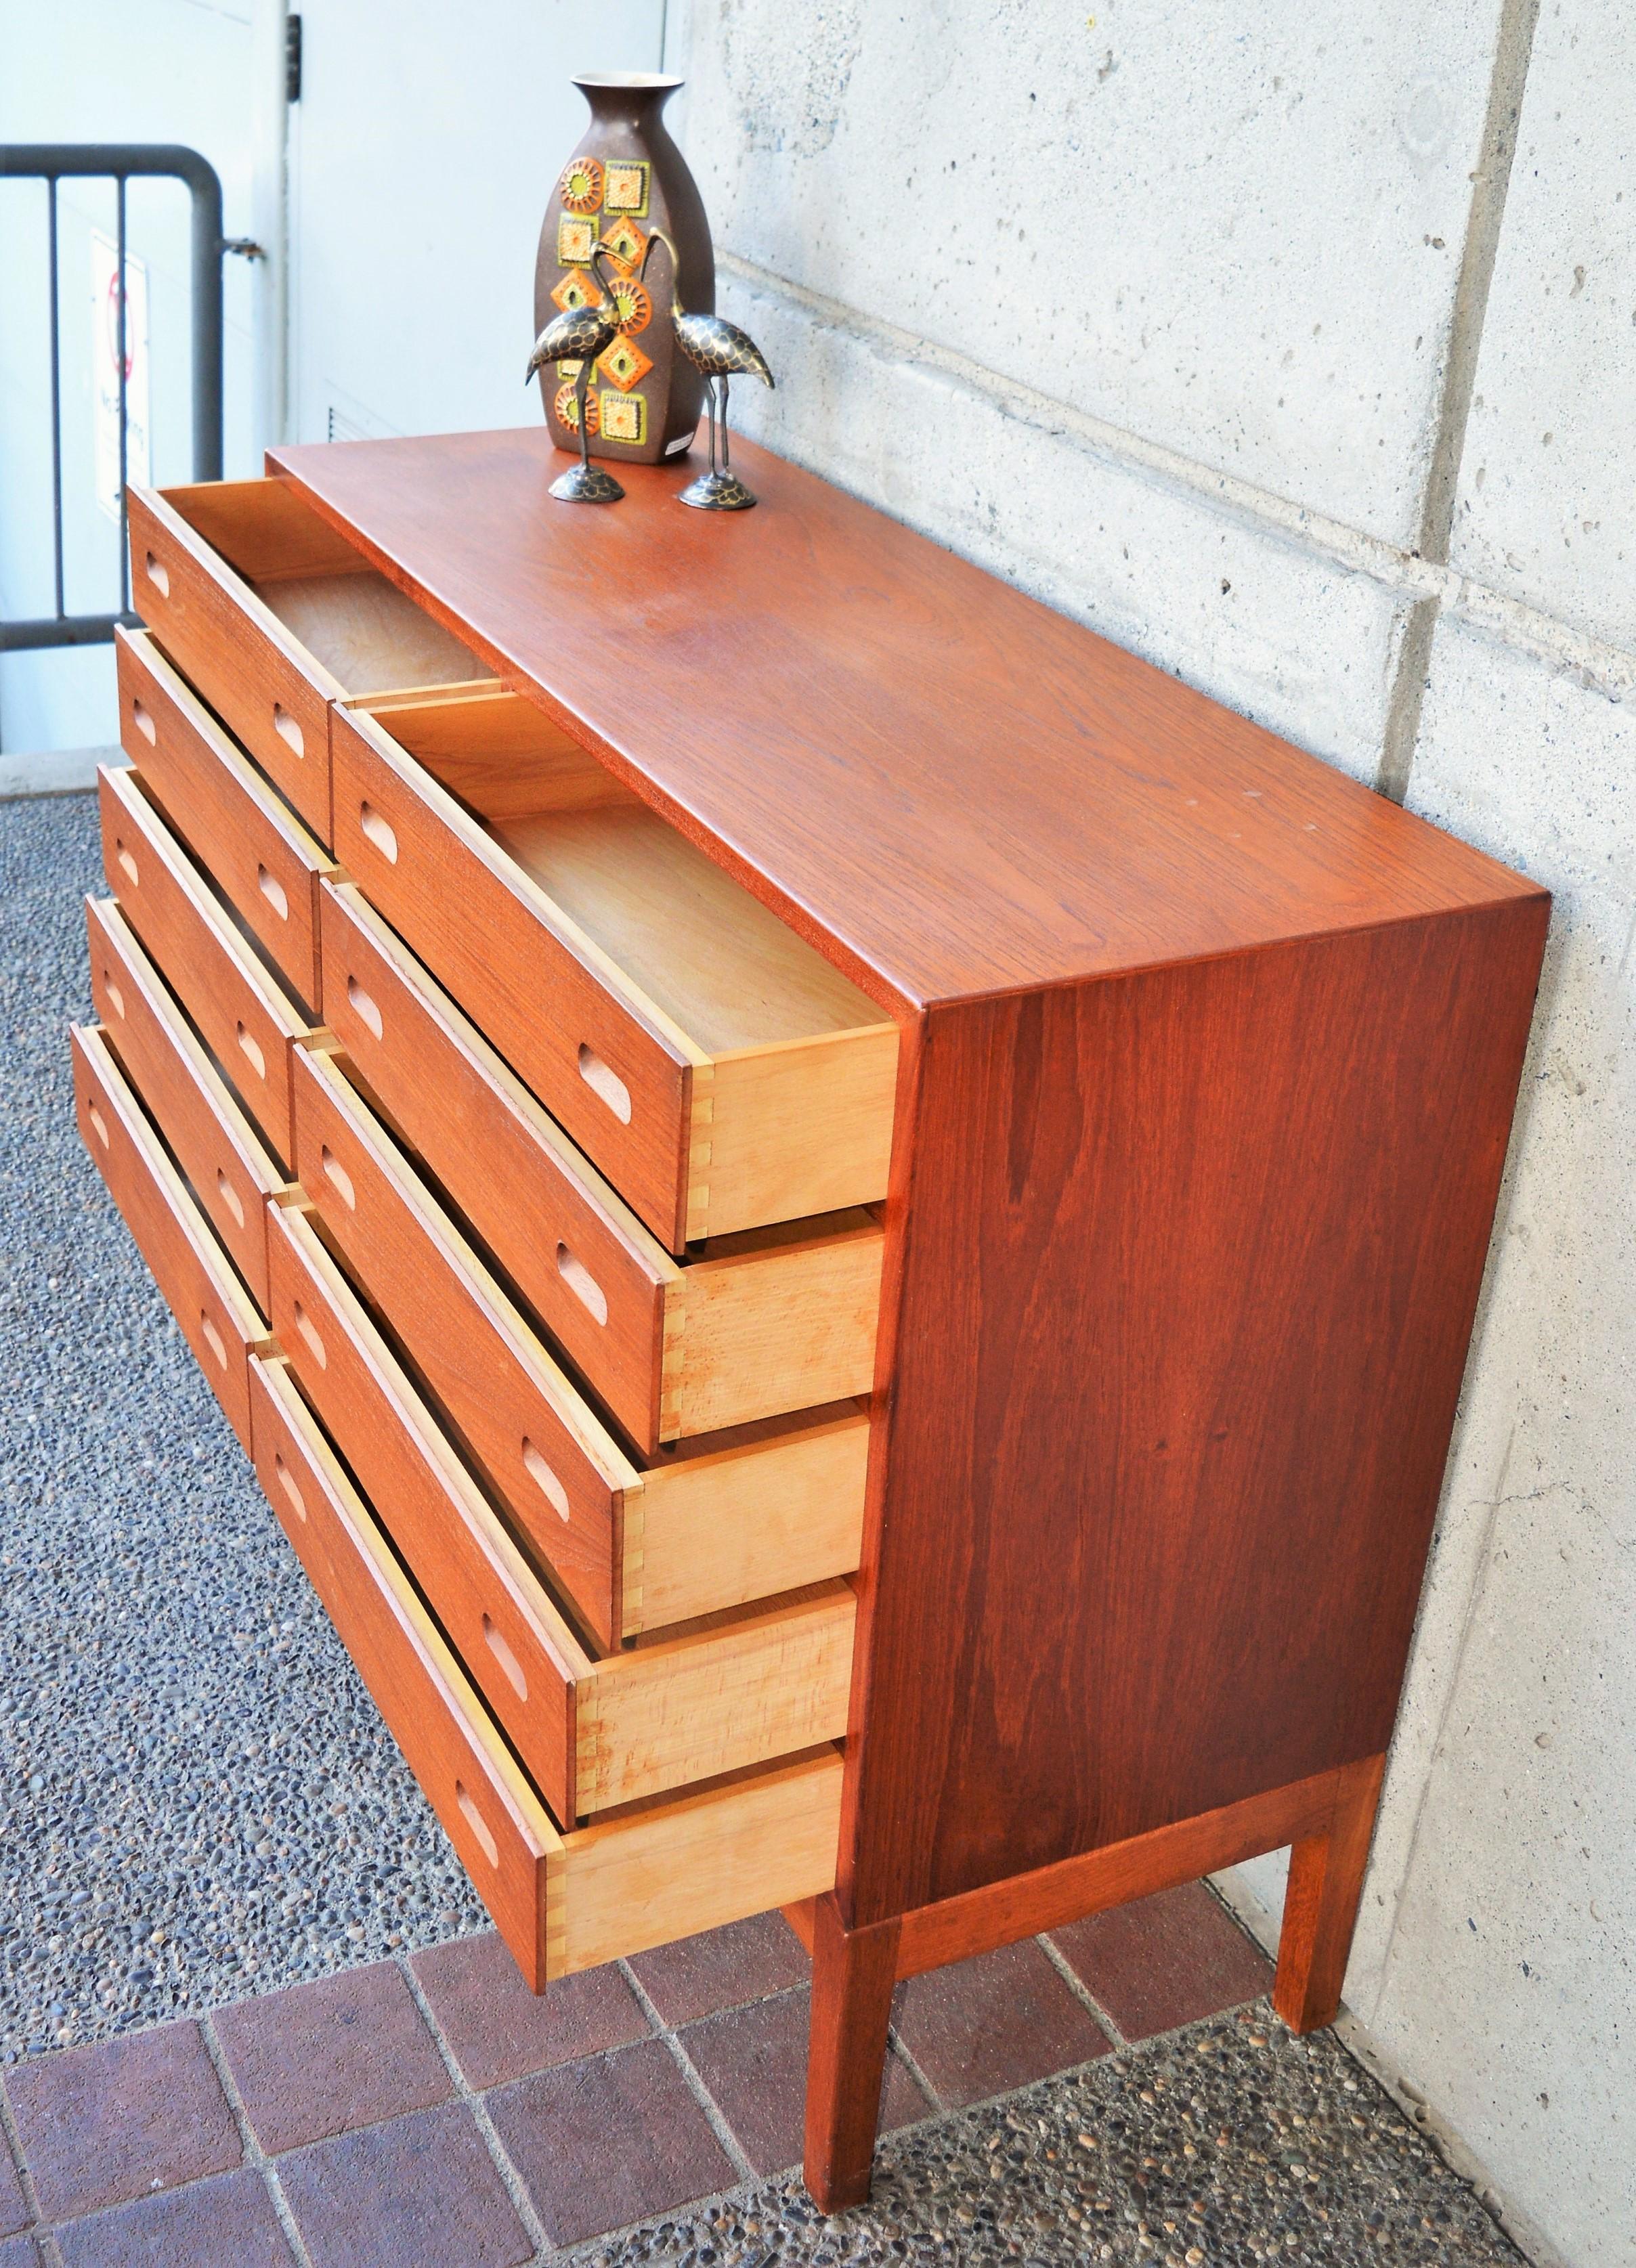 Rare Teak & Oak Borge Mogensen Quality 10-Drawer Dresser with Pedestal Base For Sale 2